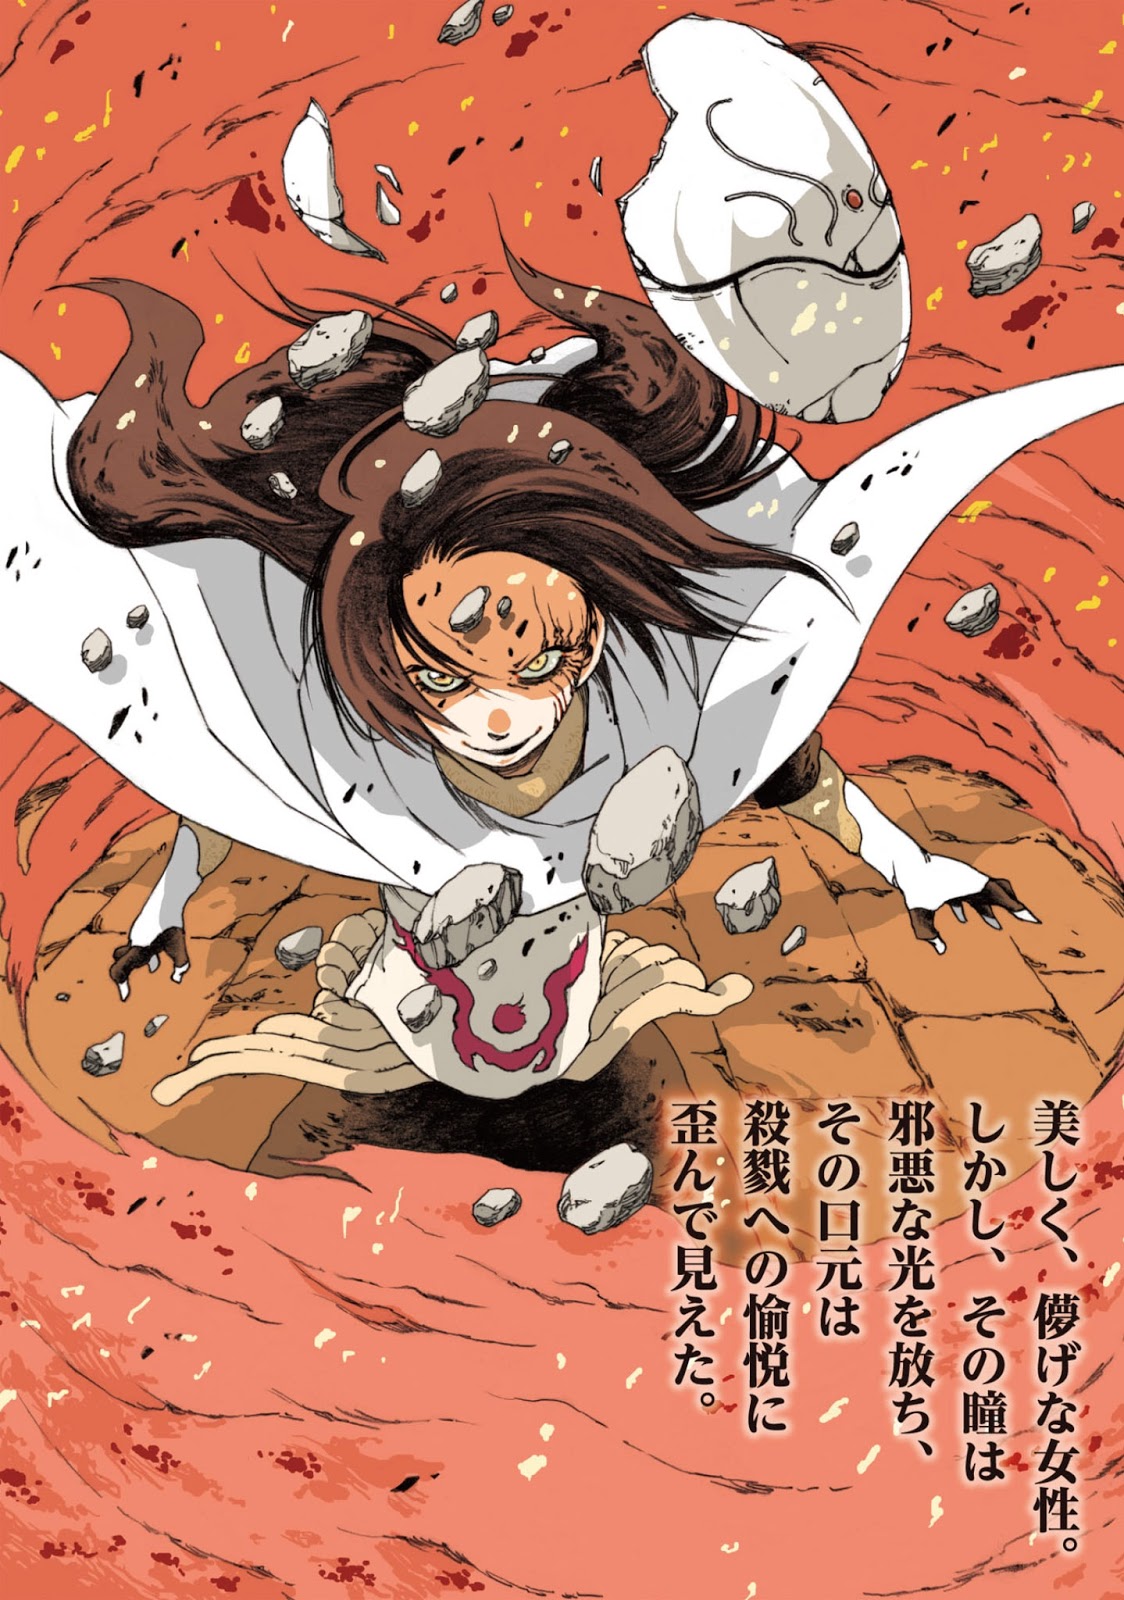 Light Novel Volume 18/Novel Illustrations